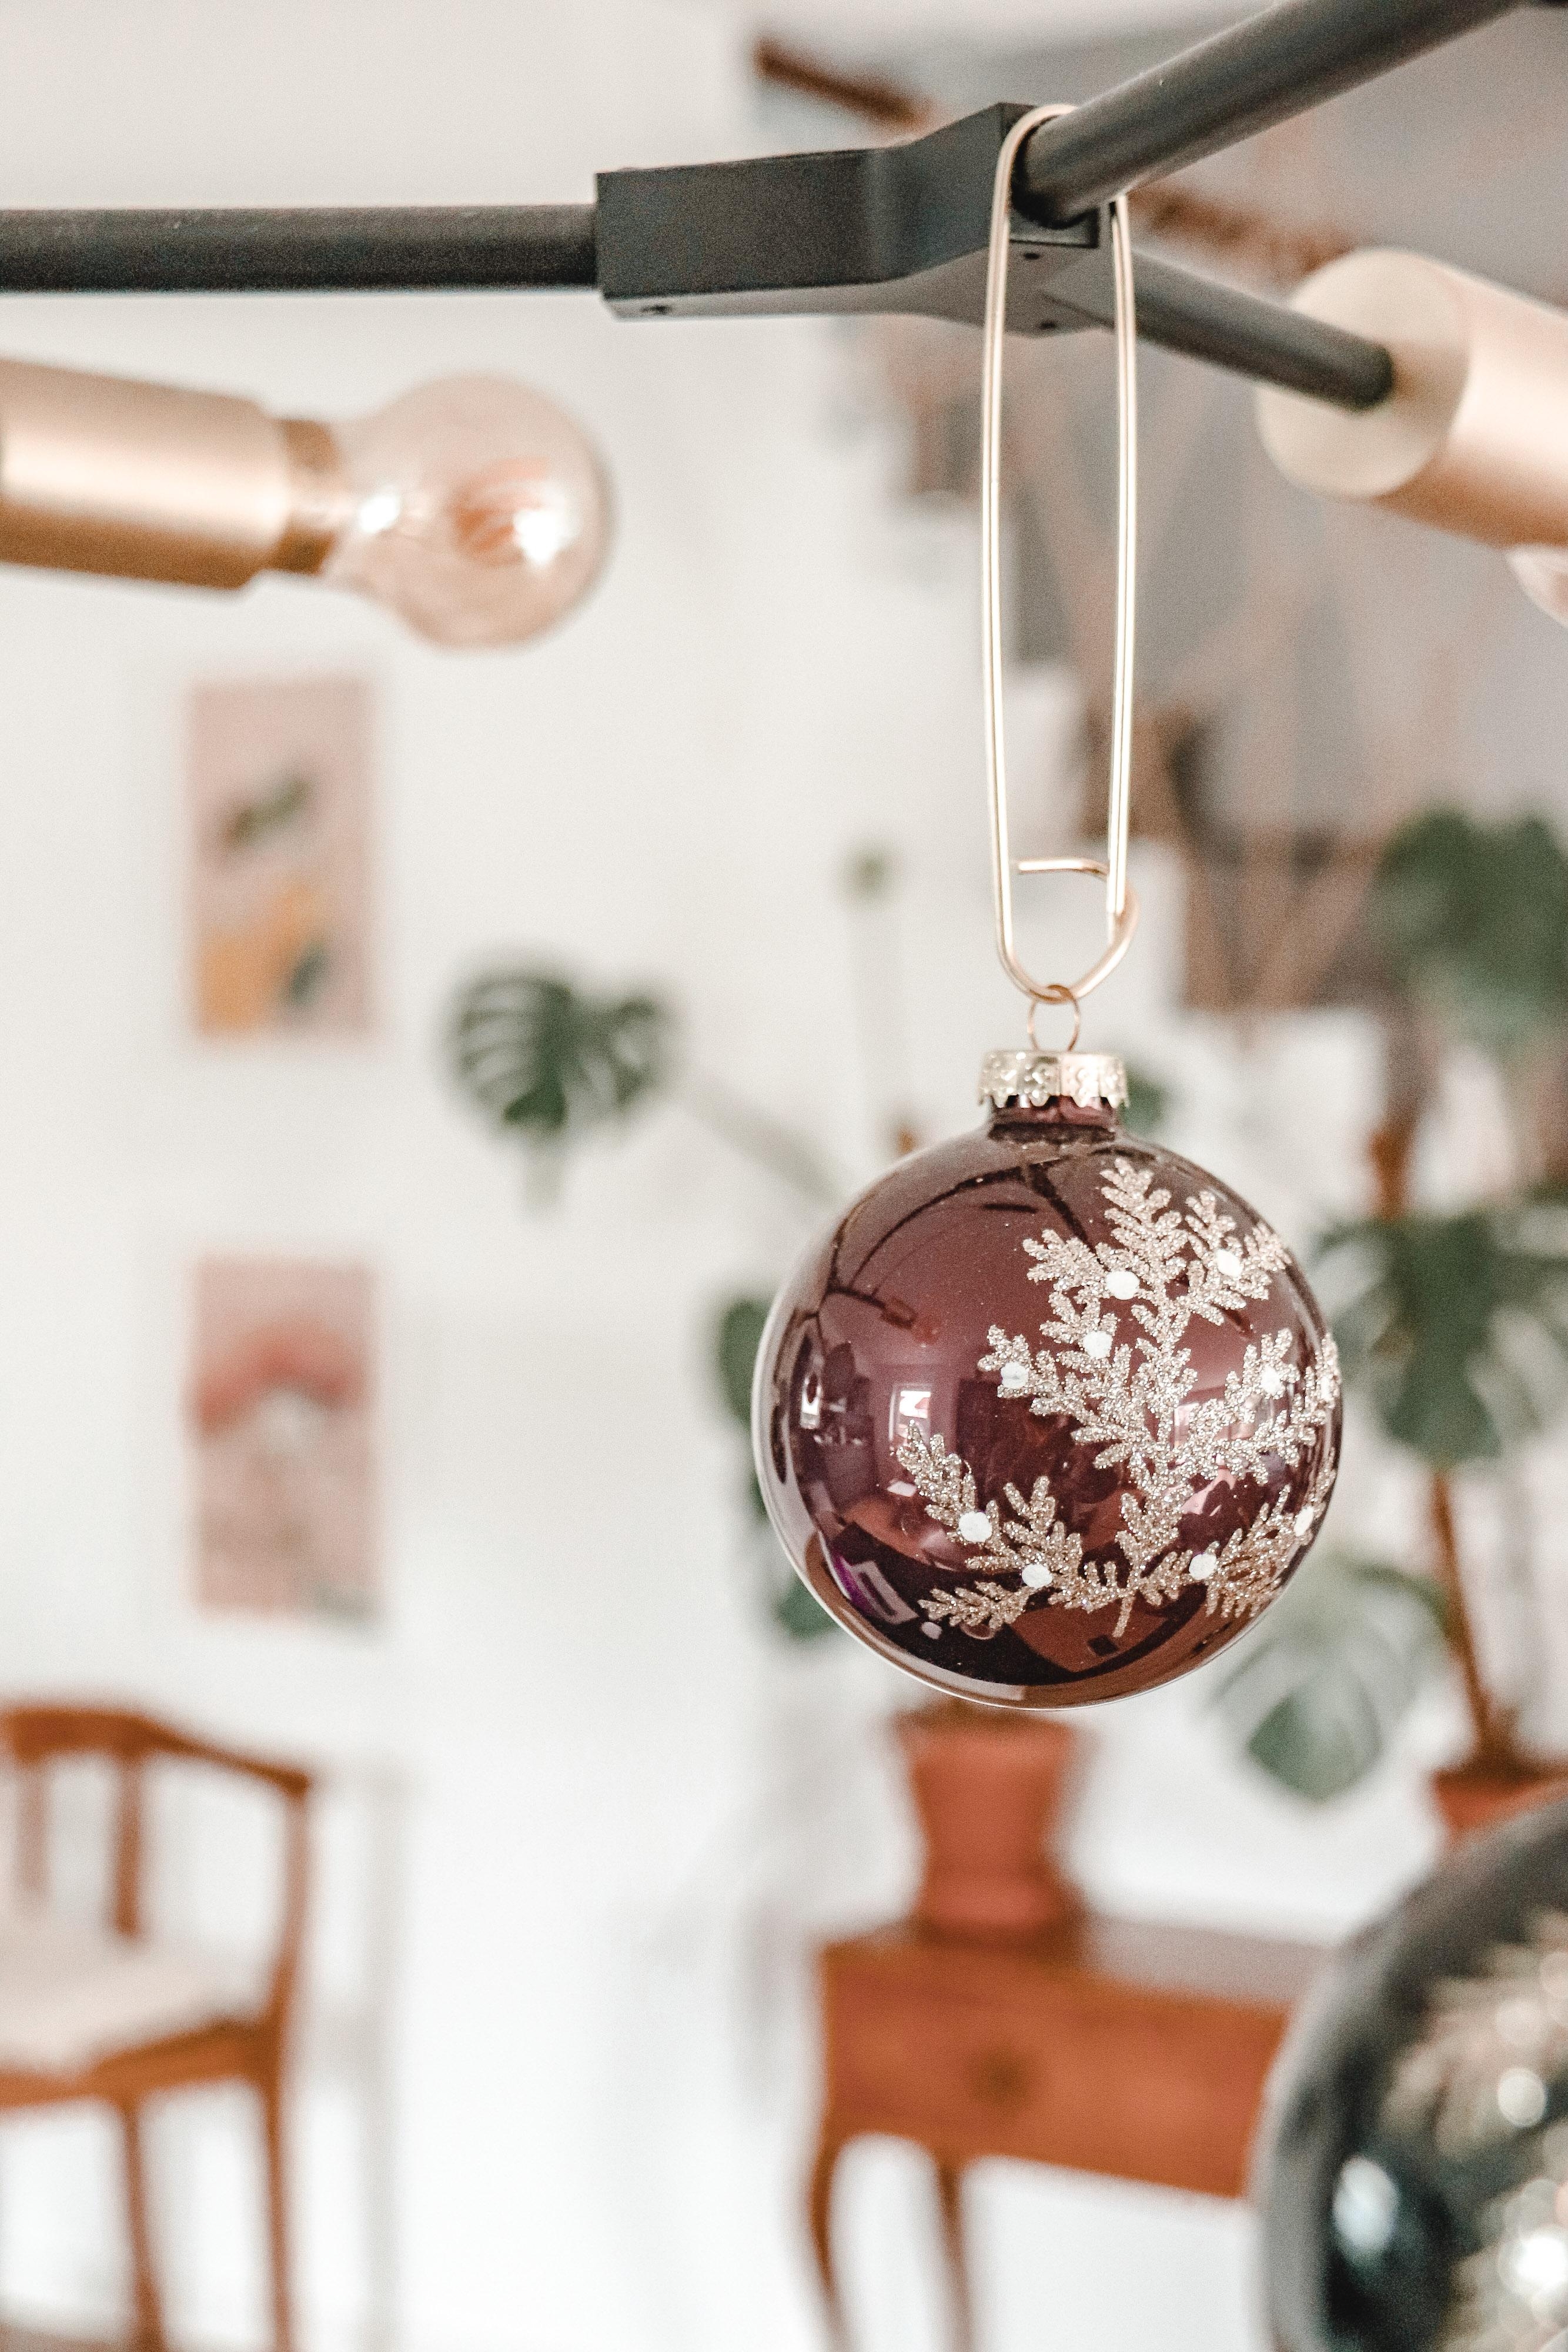 Es weihnachtet sehr. #couchliebt #weihnachten #christbaumkugel #weihnachtsbaumersatz #vintage #minimalismus #esstisch 